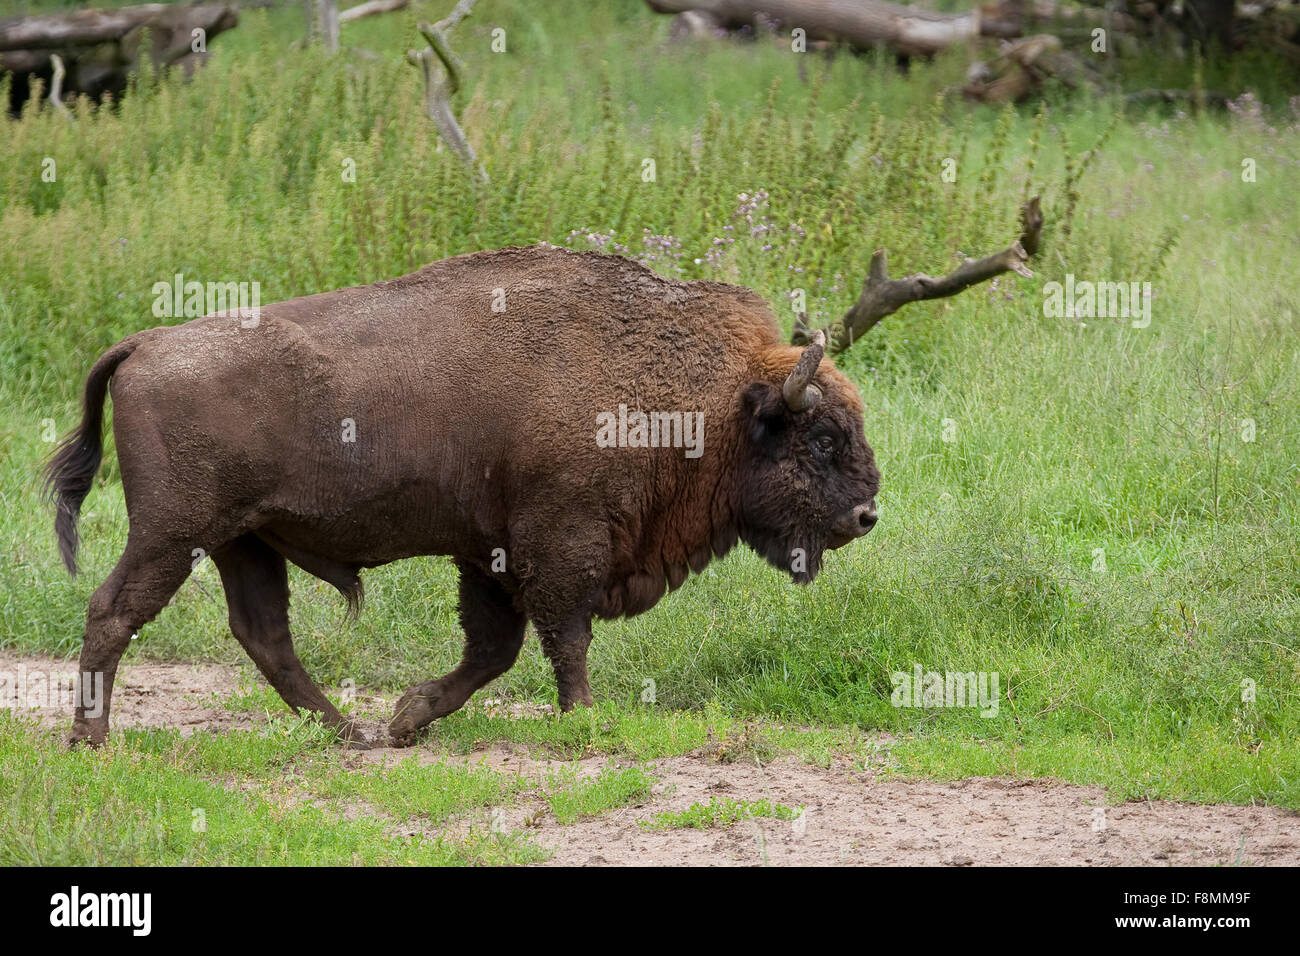 European bison, wisent, European wood bison, male, Wisent, Männchen, Bulle, Europäisches Bison, Bison bonasus, Wildrind Stock Photo